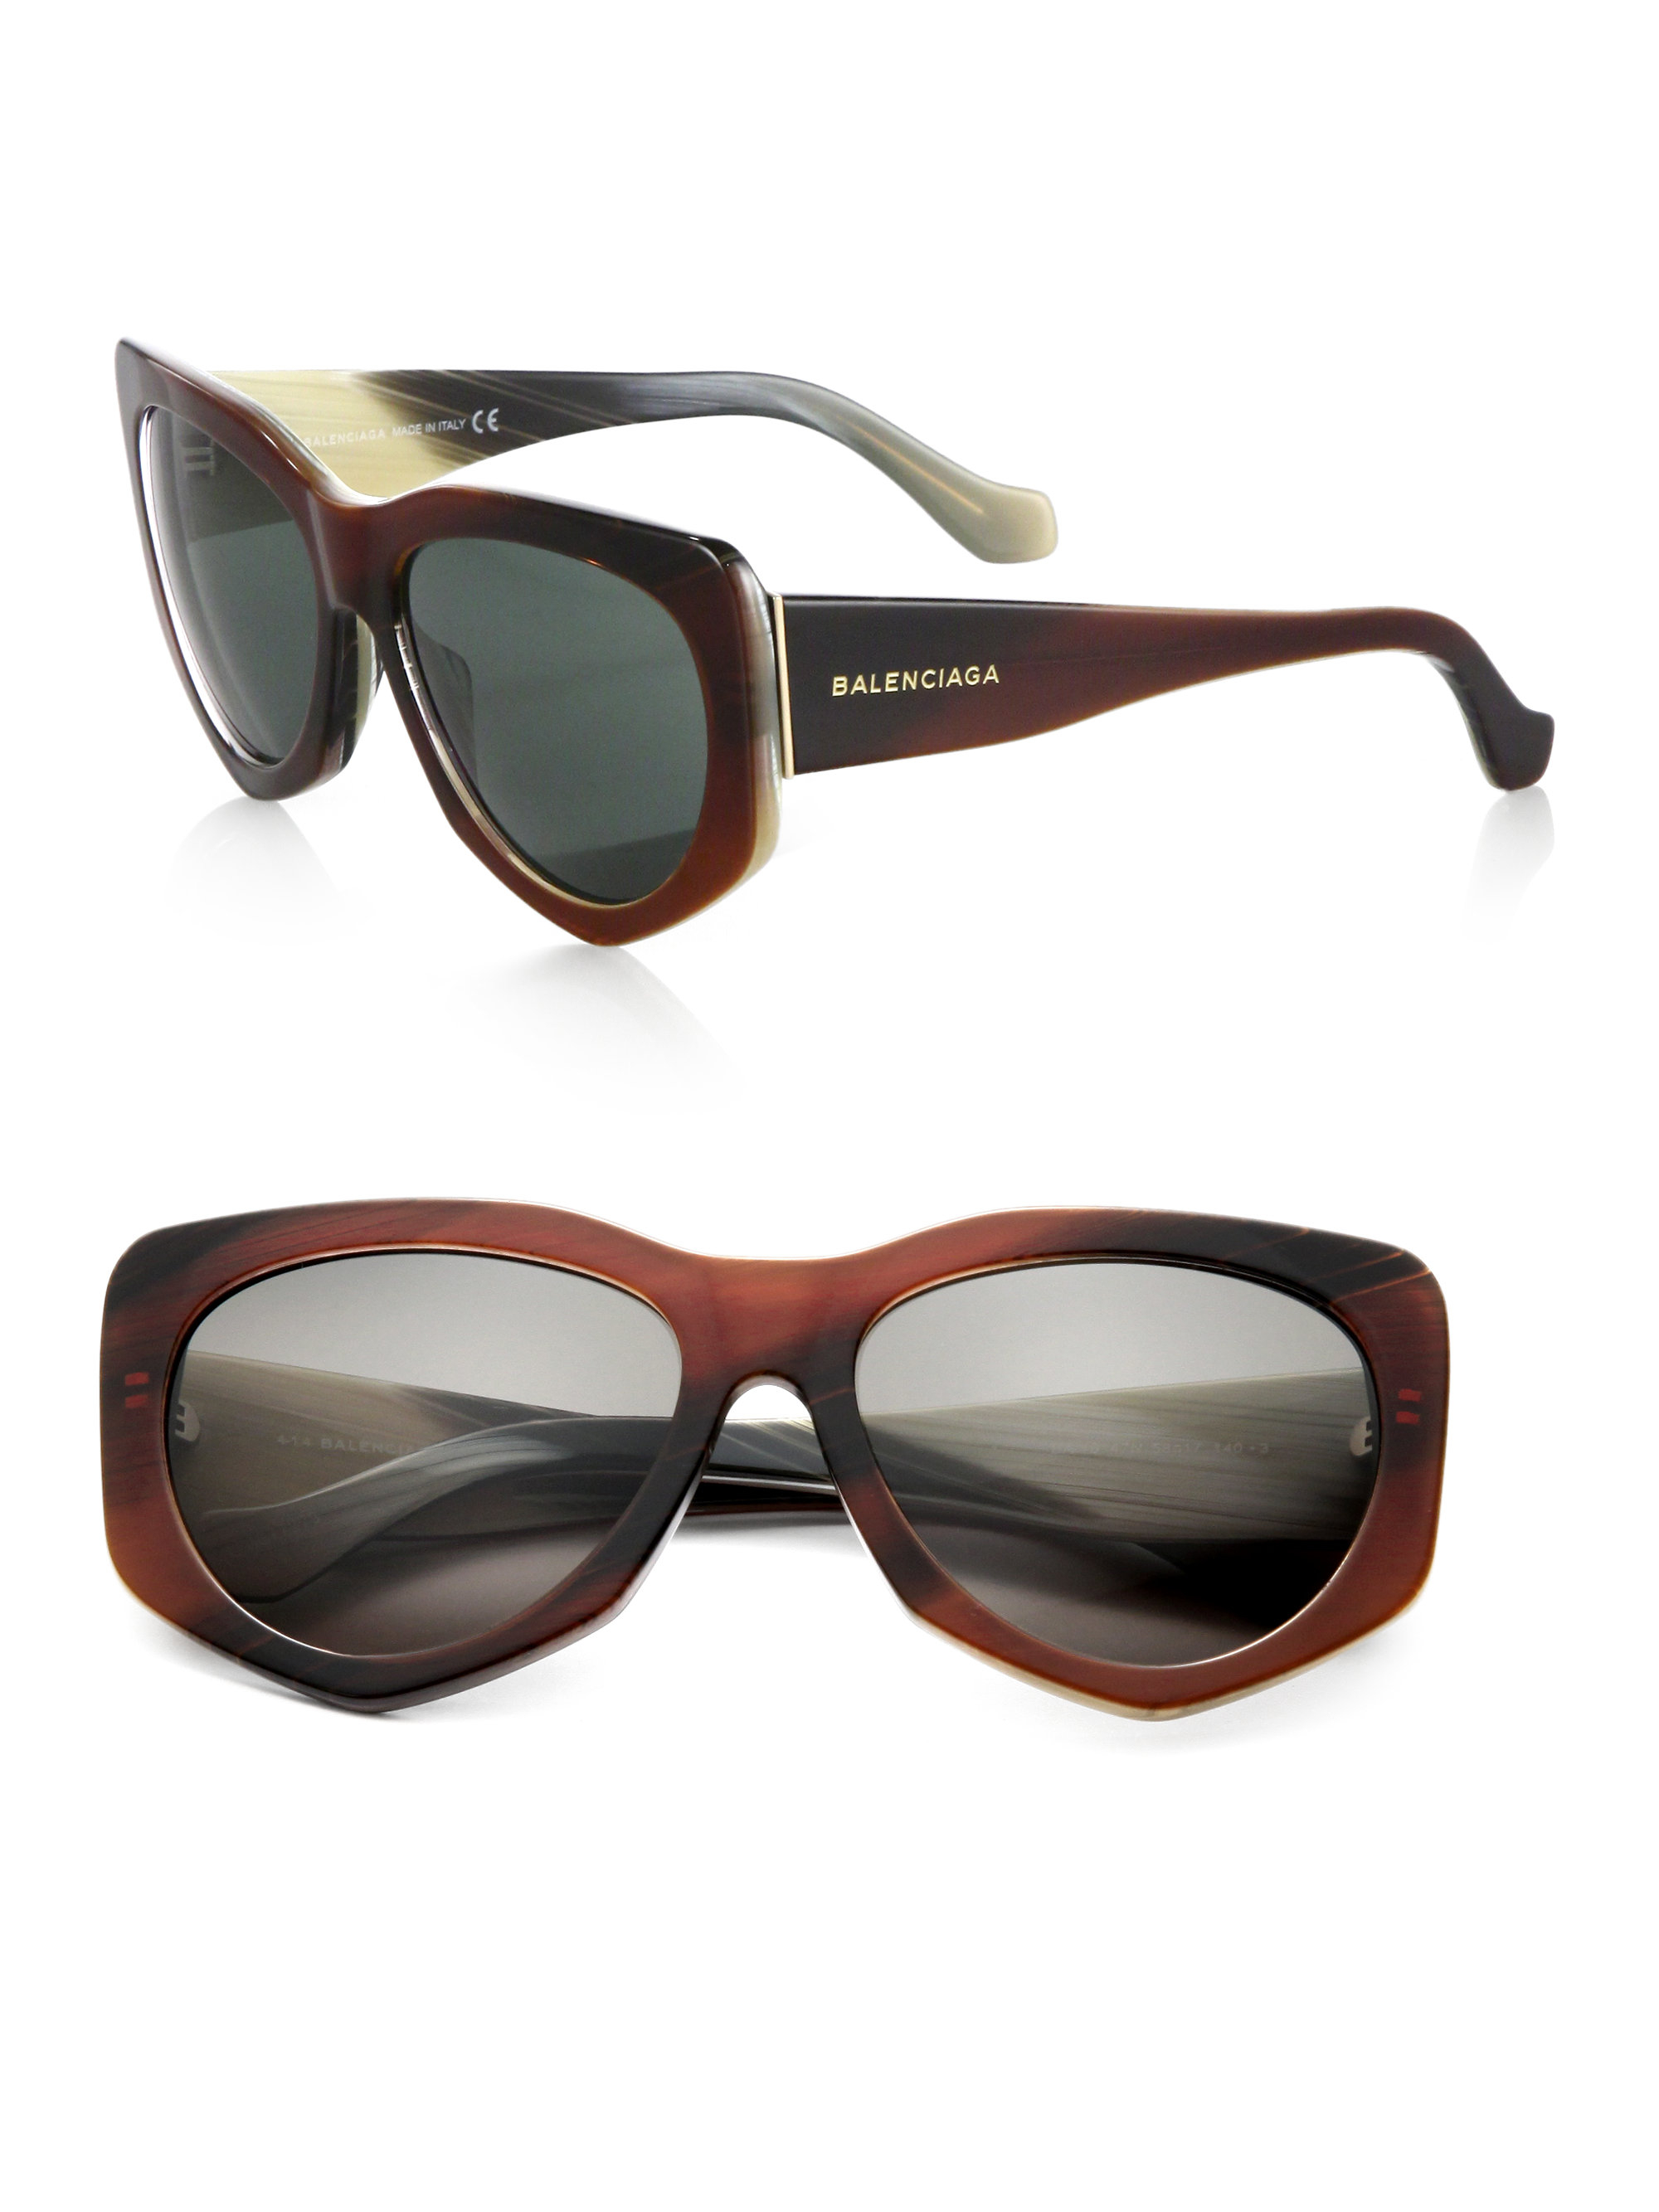 Balenciaga Geometric Retro Sunglasses in Brown - Lyst